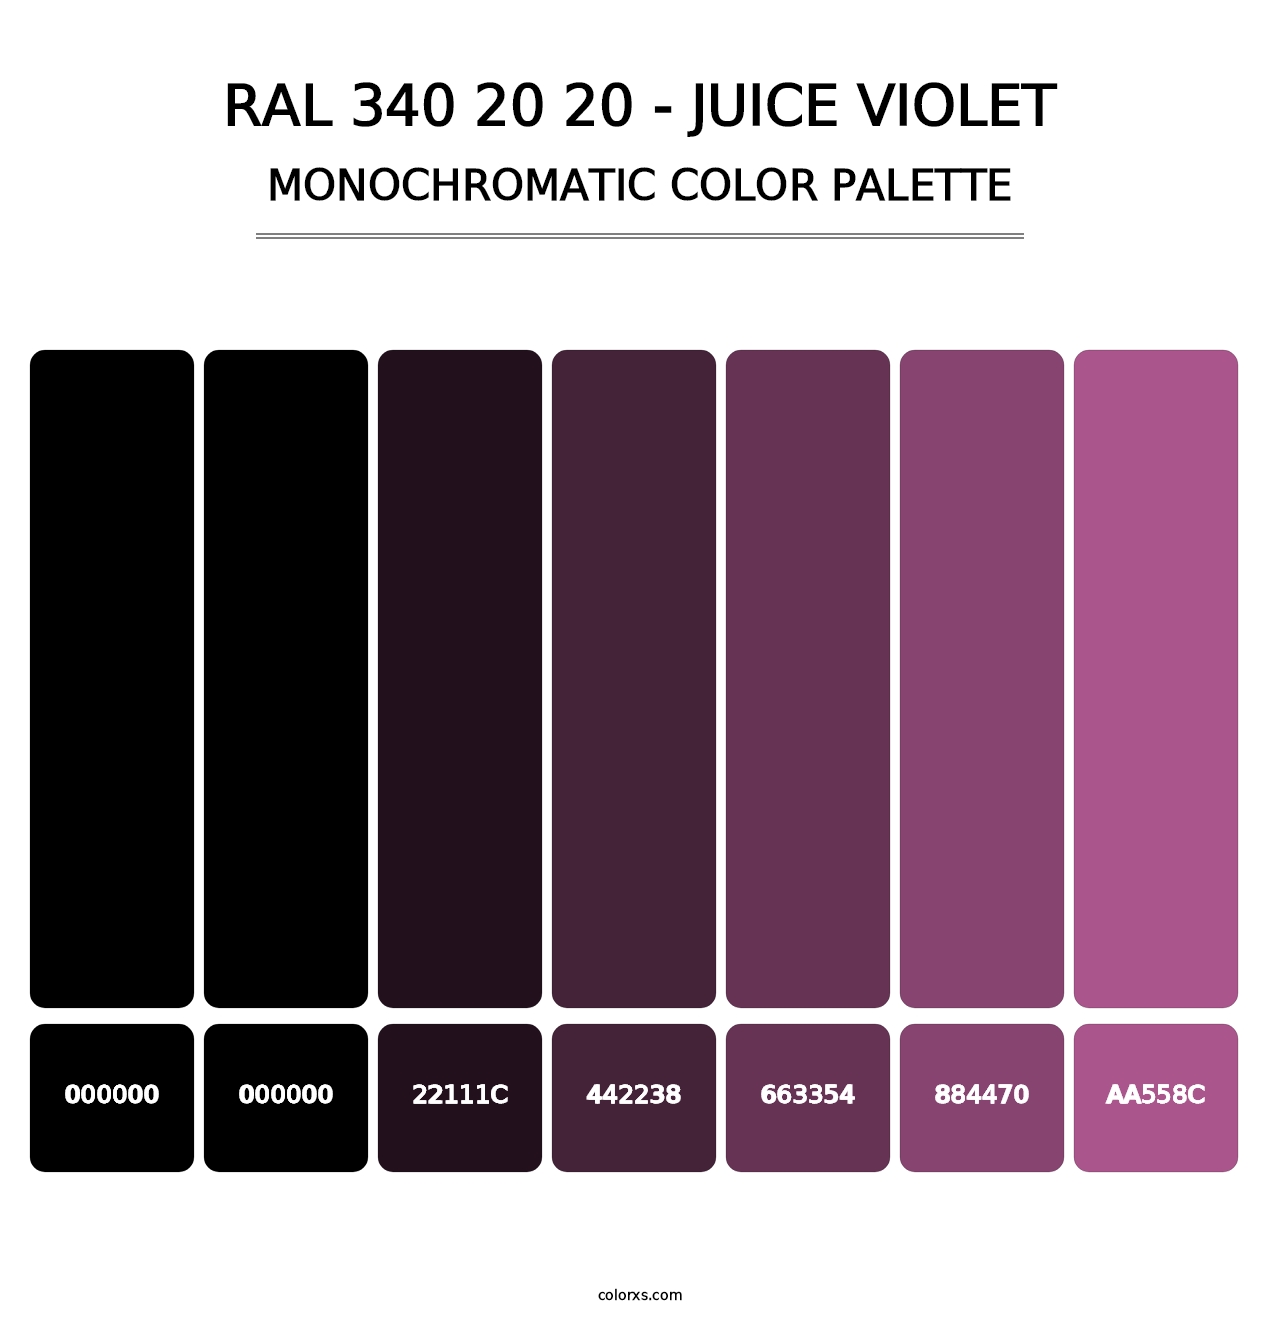 RAL 340 20 20 - Juice Violet - Monochromatic Color Palette